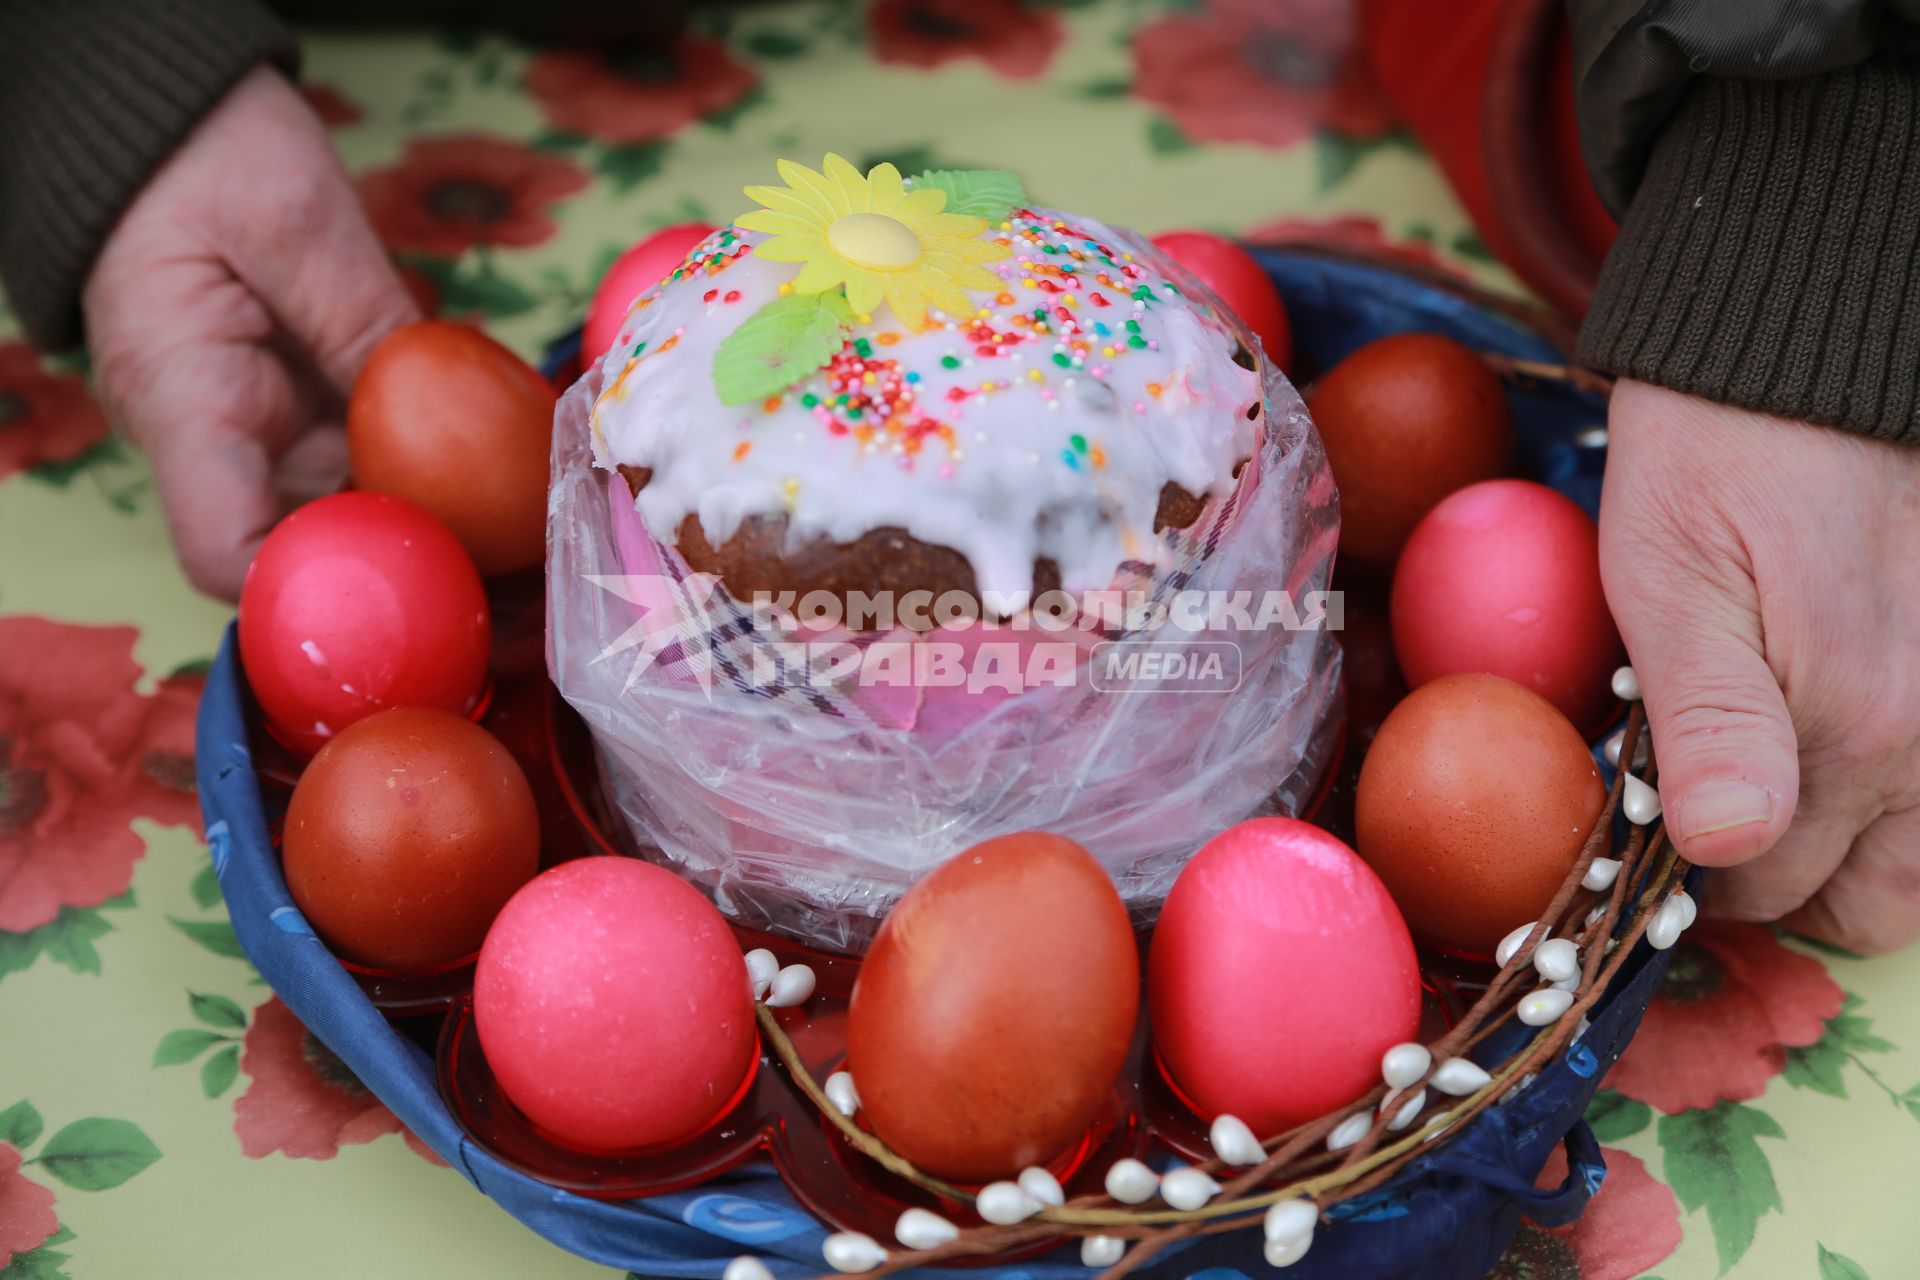 Красноярск. Во время освящения пасхальных куличей и яиц перед празднованием православной Пасхи.